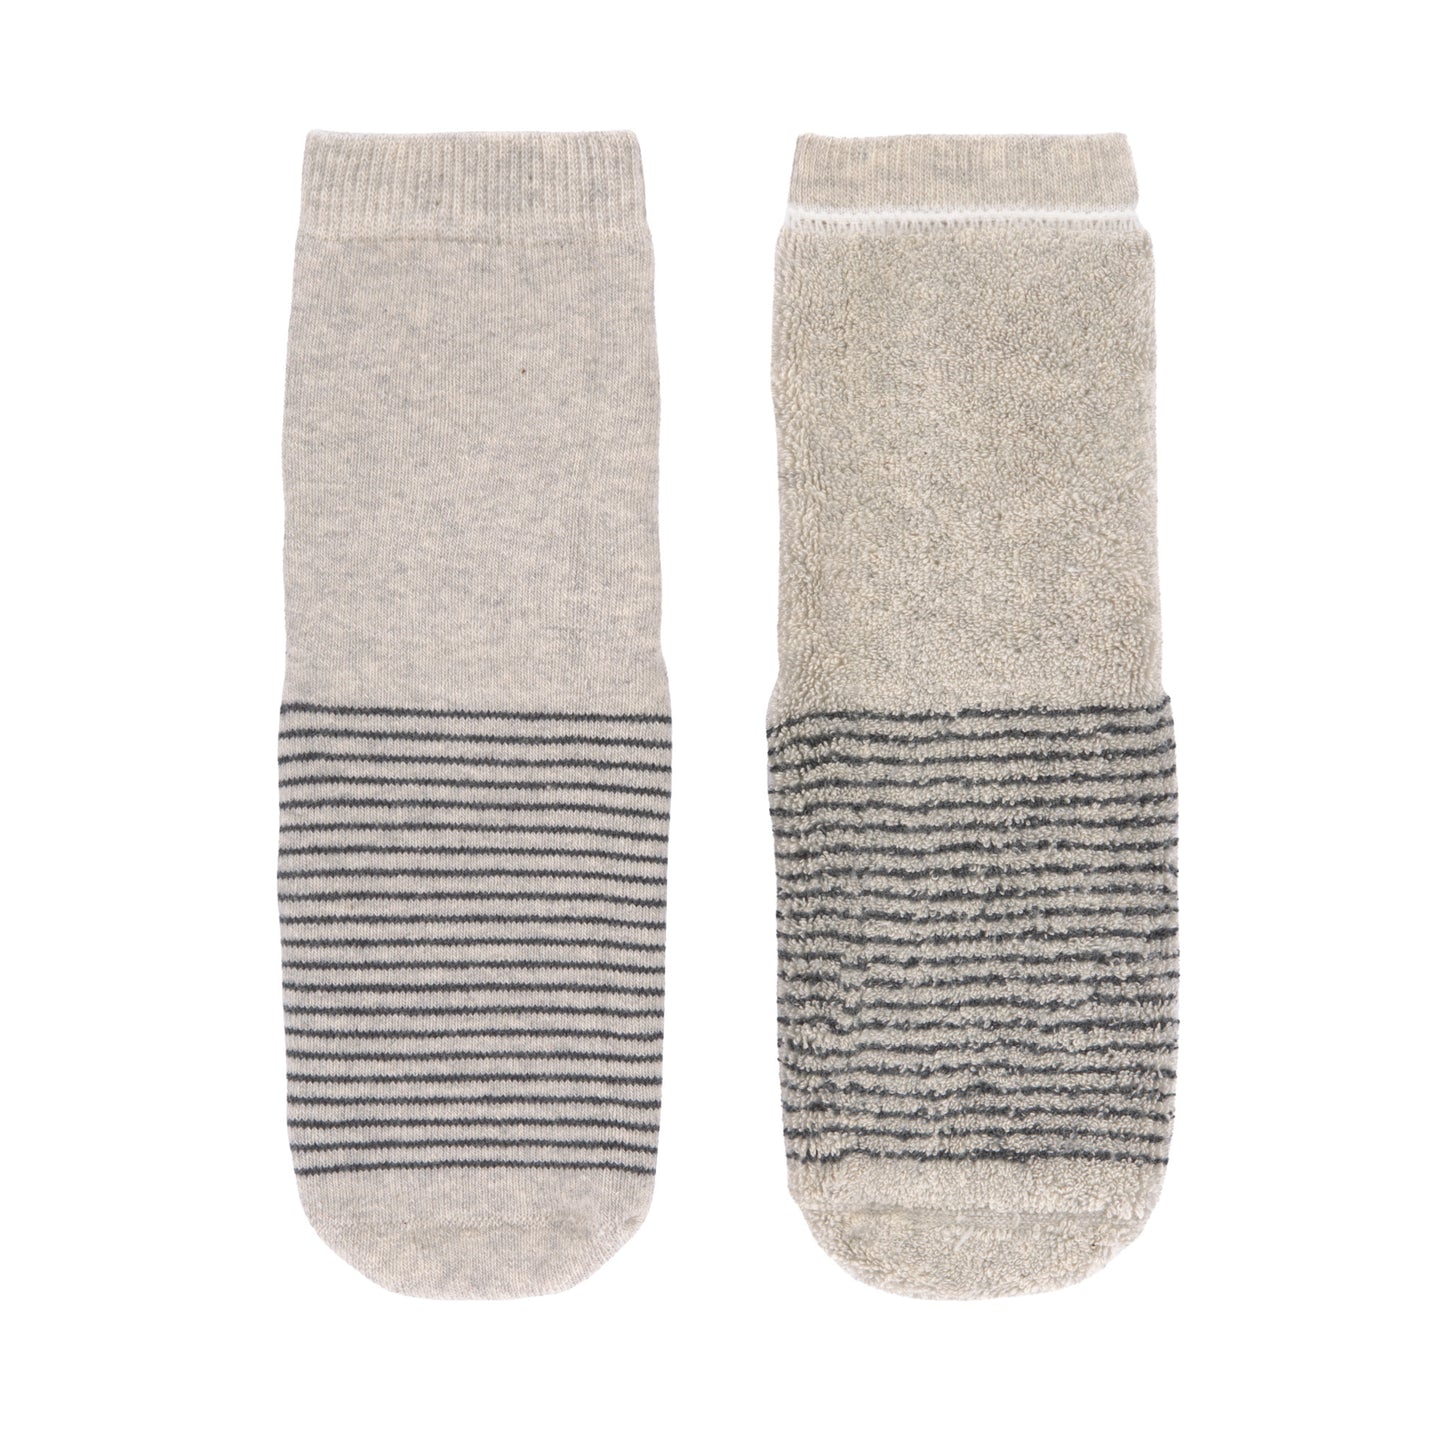 Antirutsch-Socken: Anti-slip Socks 2 pcs.